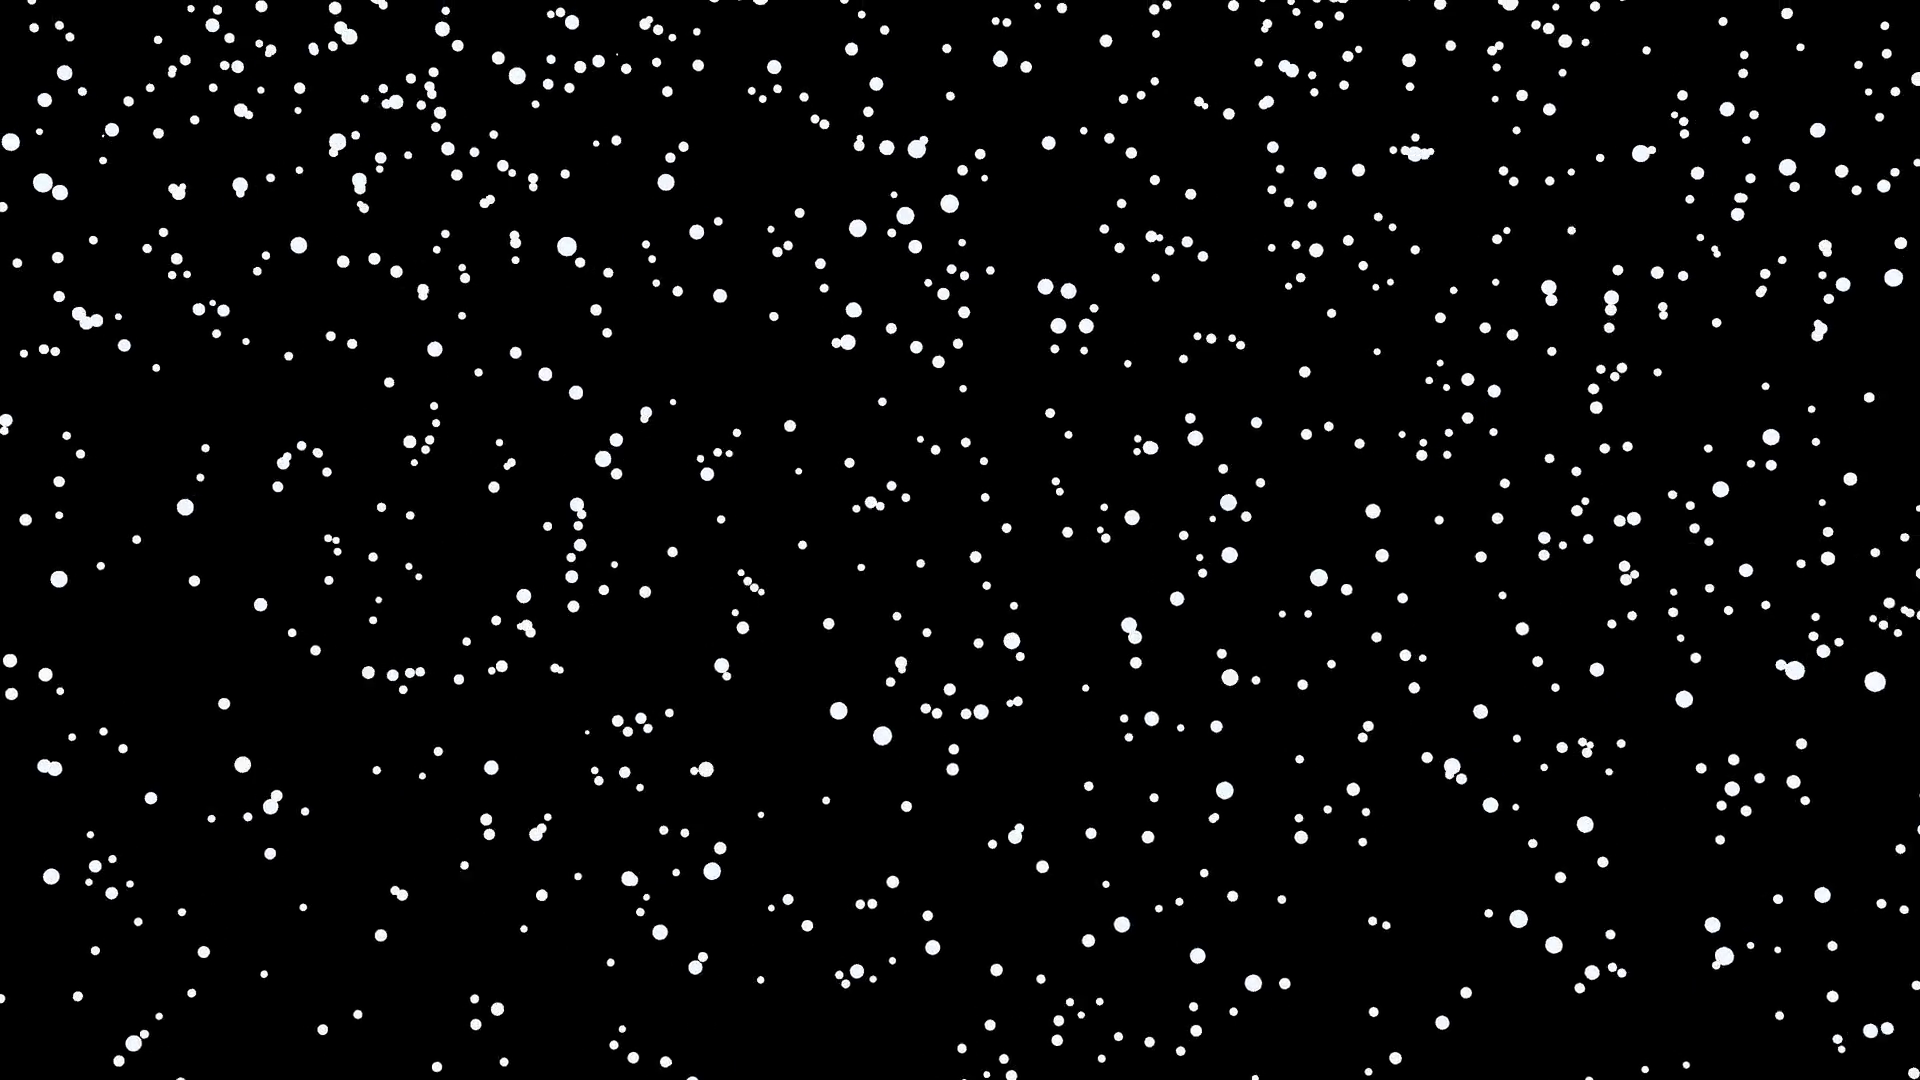 Снег на прозрачном фоне. Снег на черном фоне. Снег на черном фоне для фотошопа. Падающий снег без фона для фотошопа. Снег для фотошопа